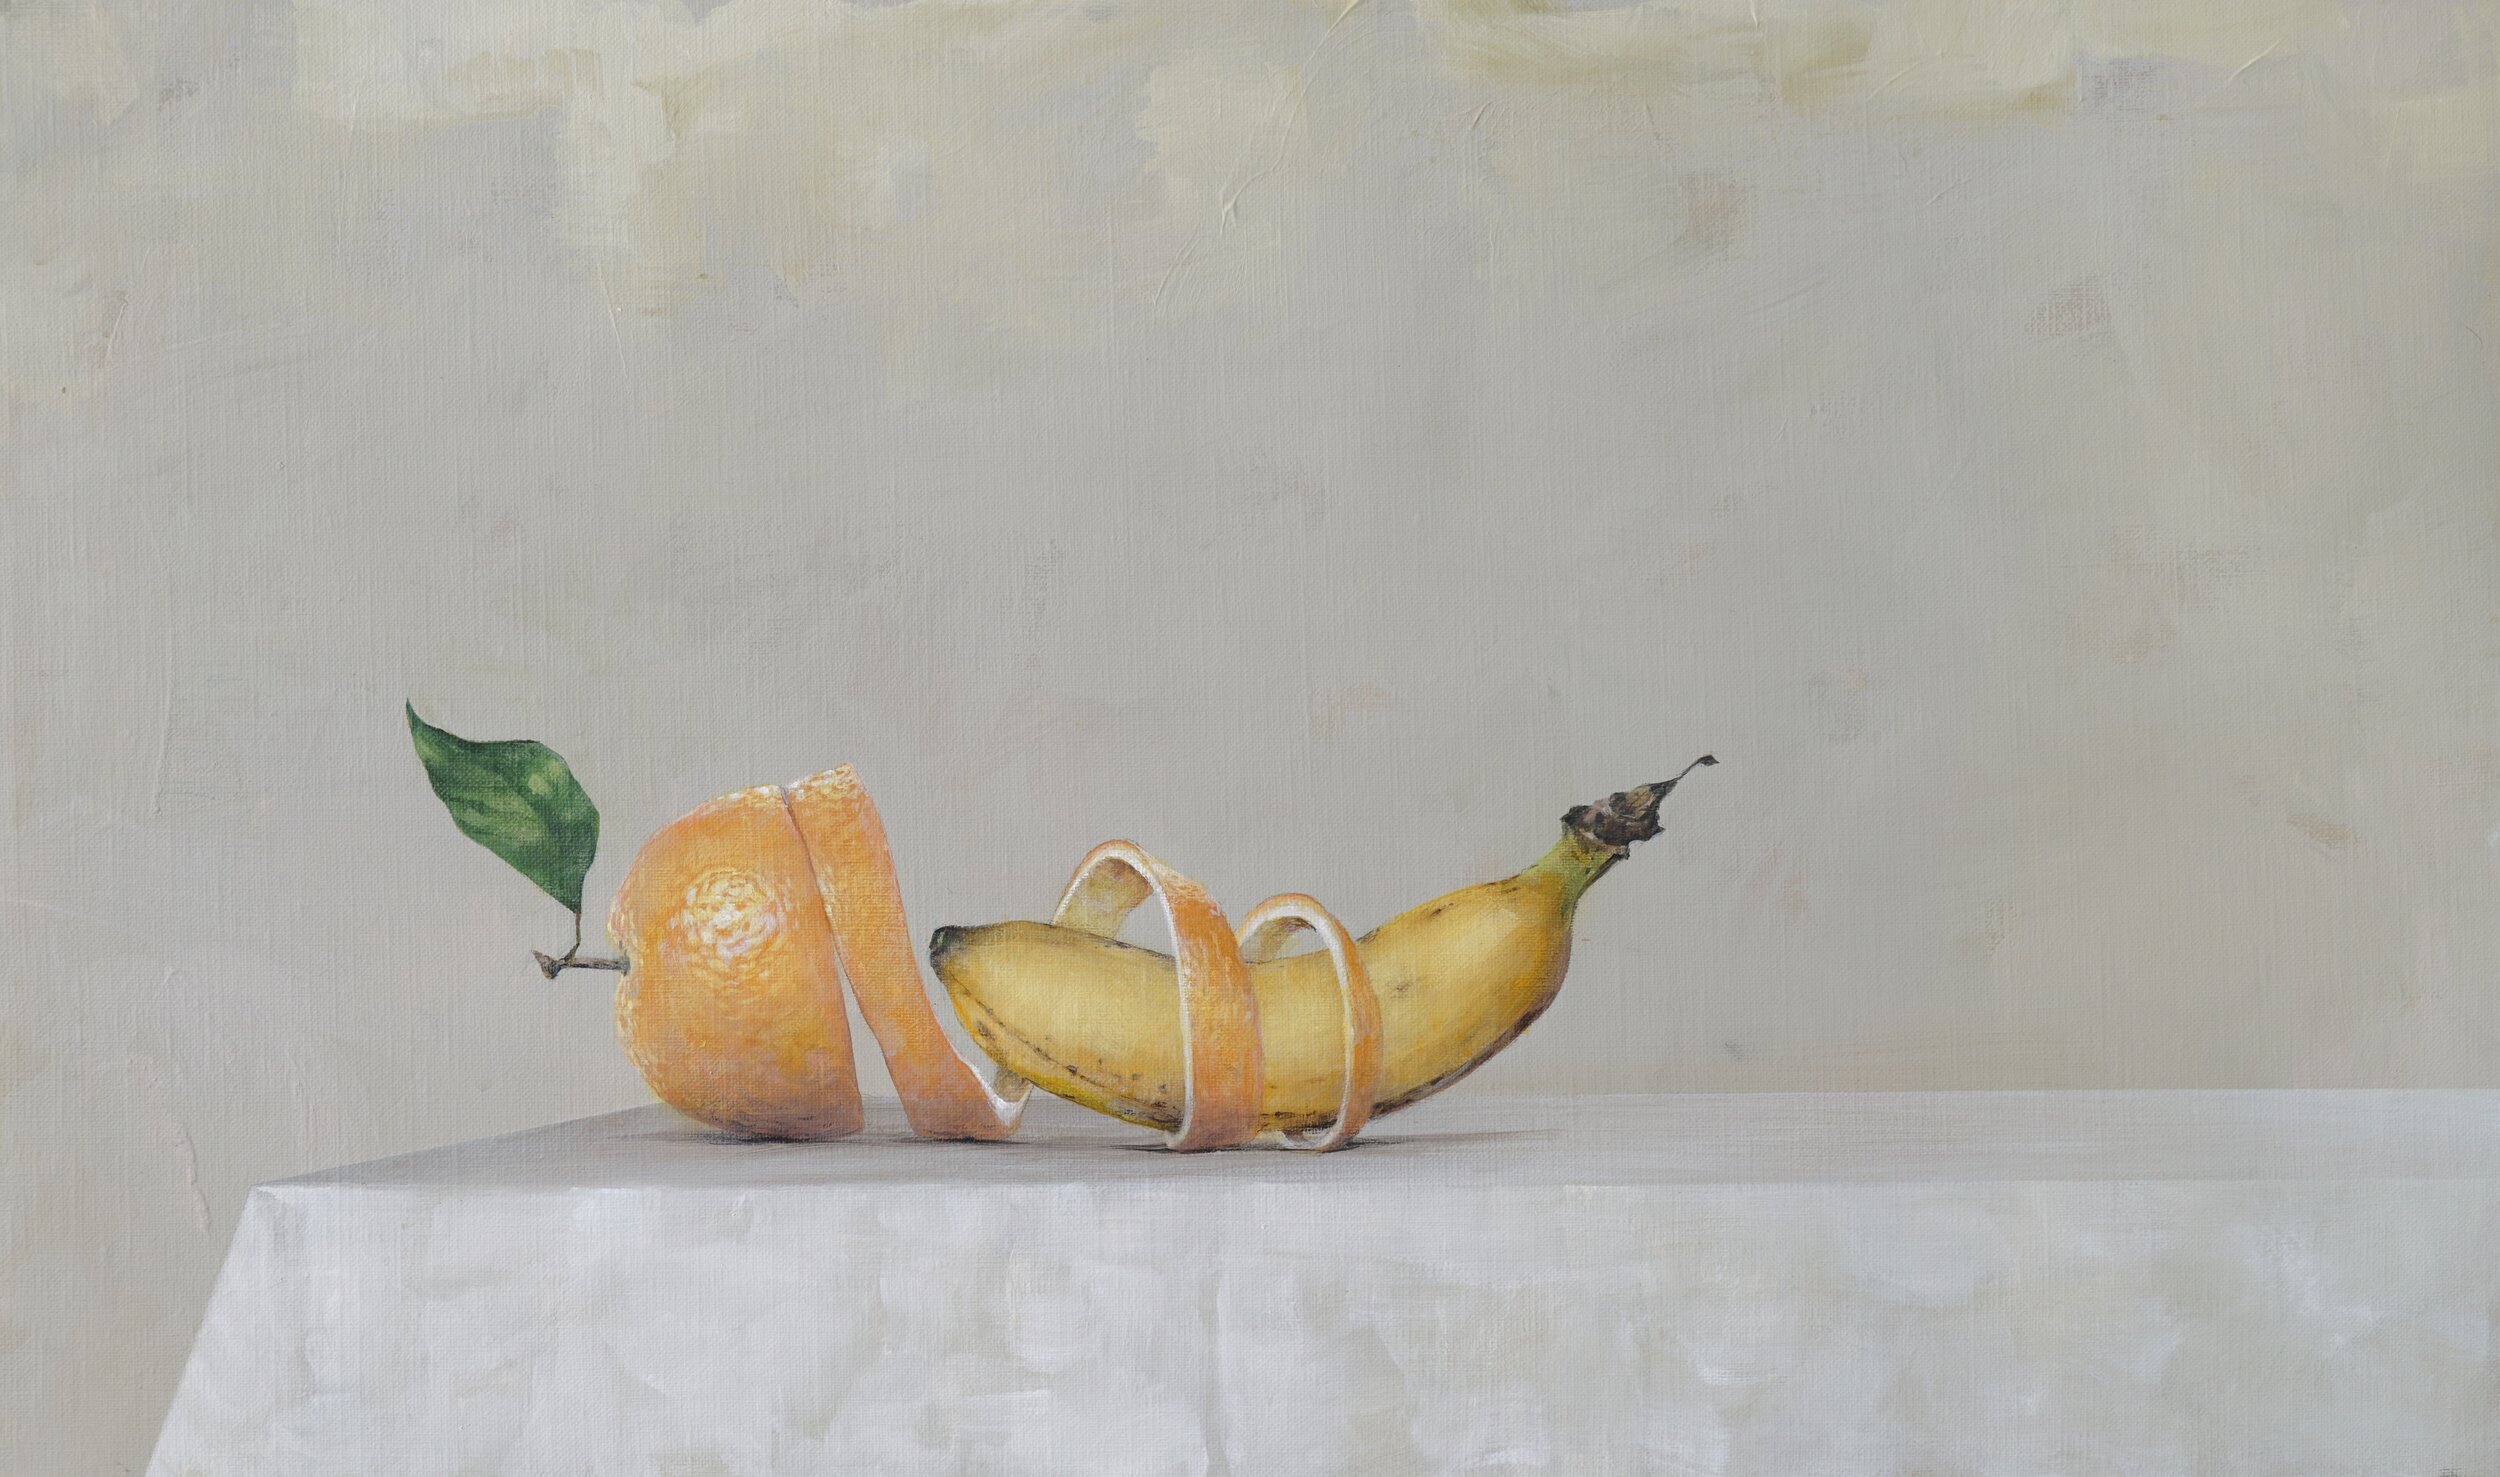 Ahmad_Zakii_Anwar. Banana & Orange.2020. Acrylic on linen. 16 1:8 x 27 1:8 in. .jpg